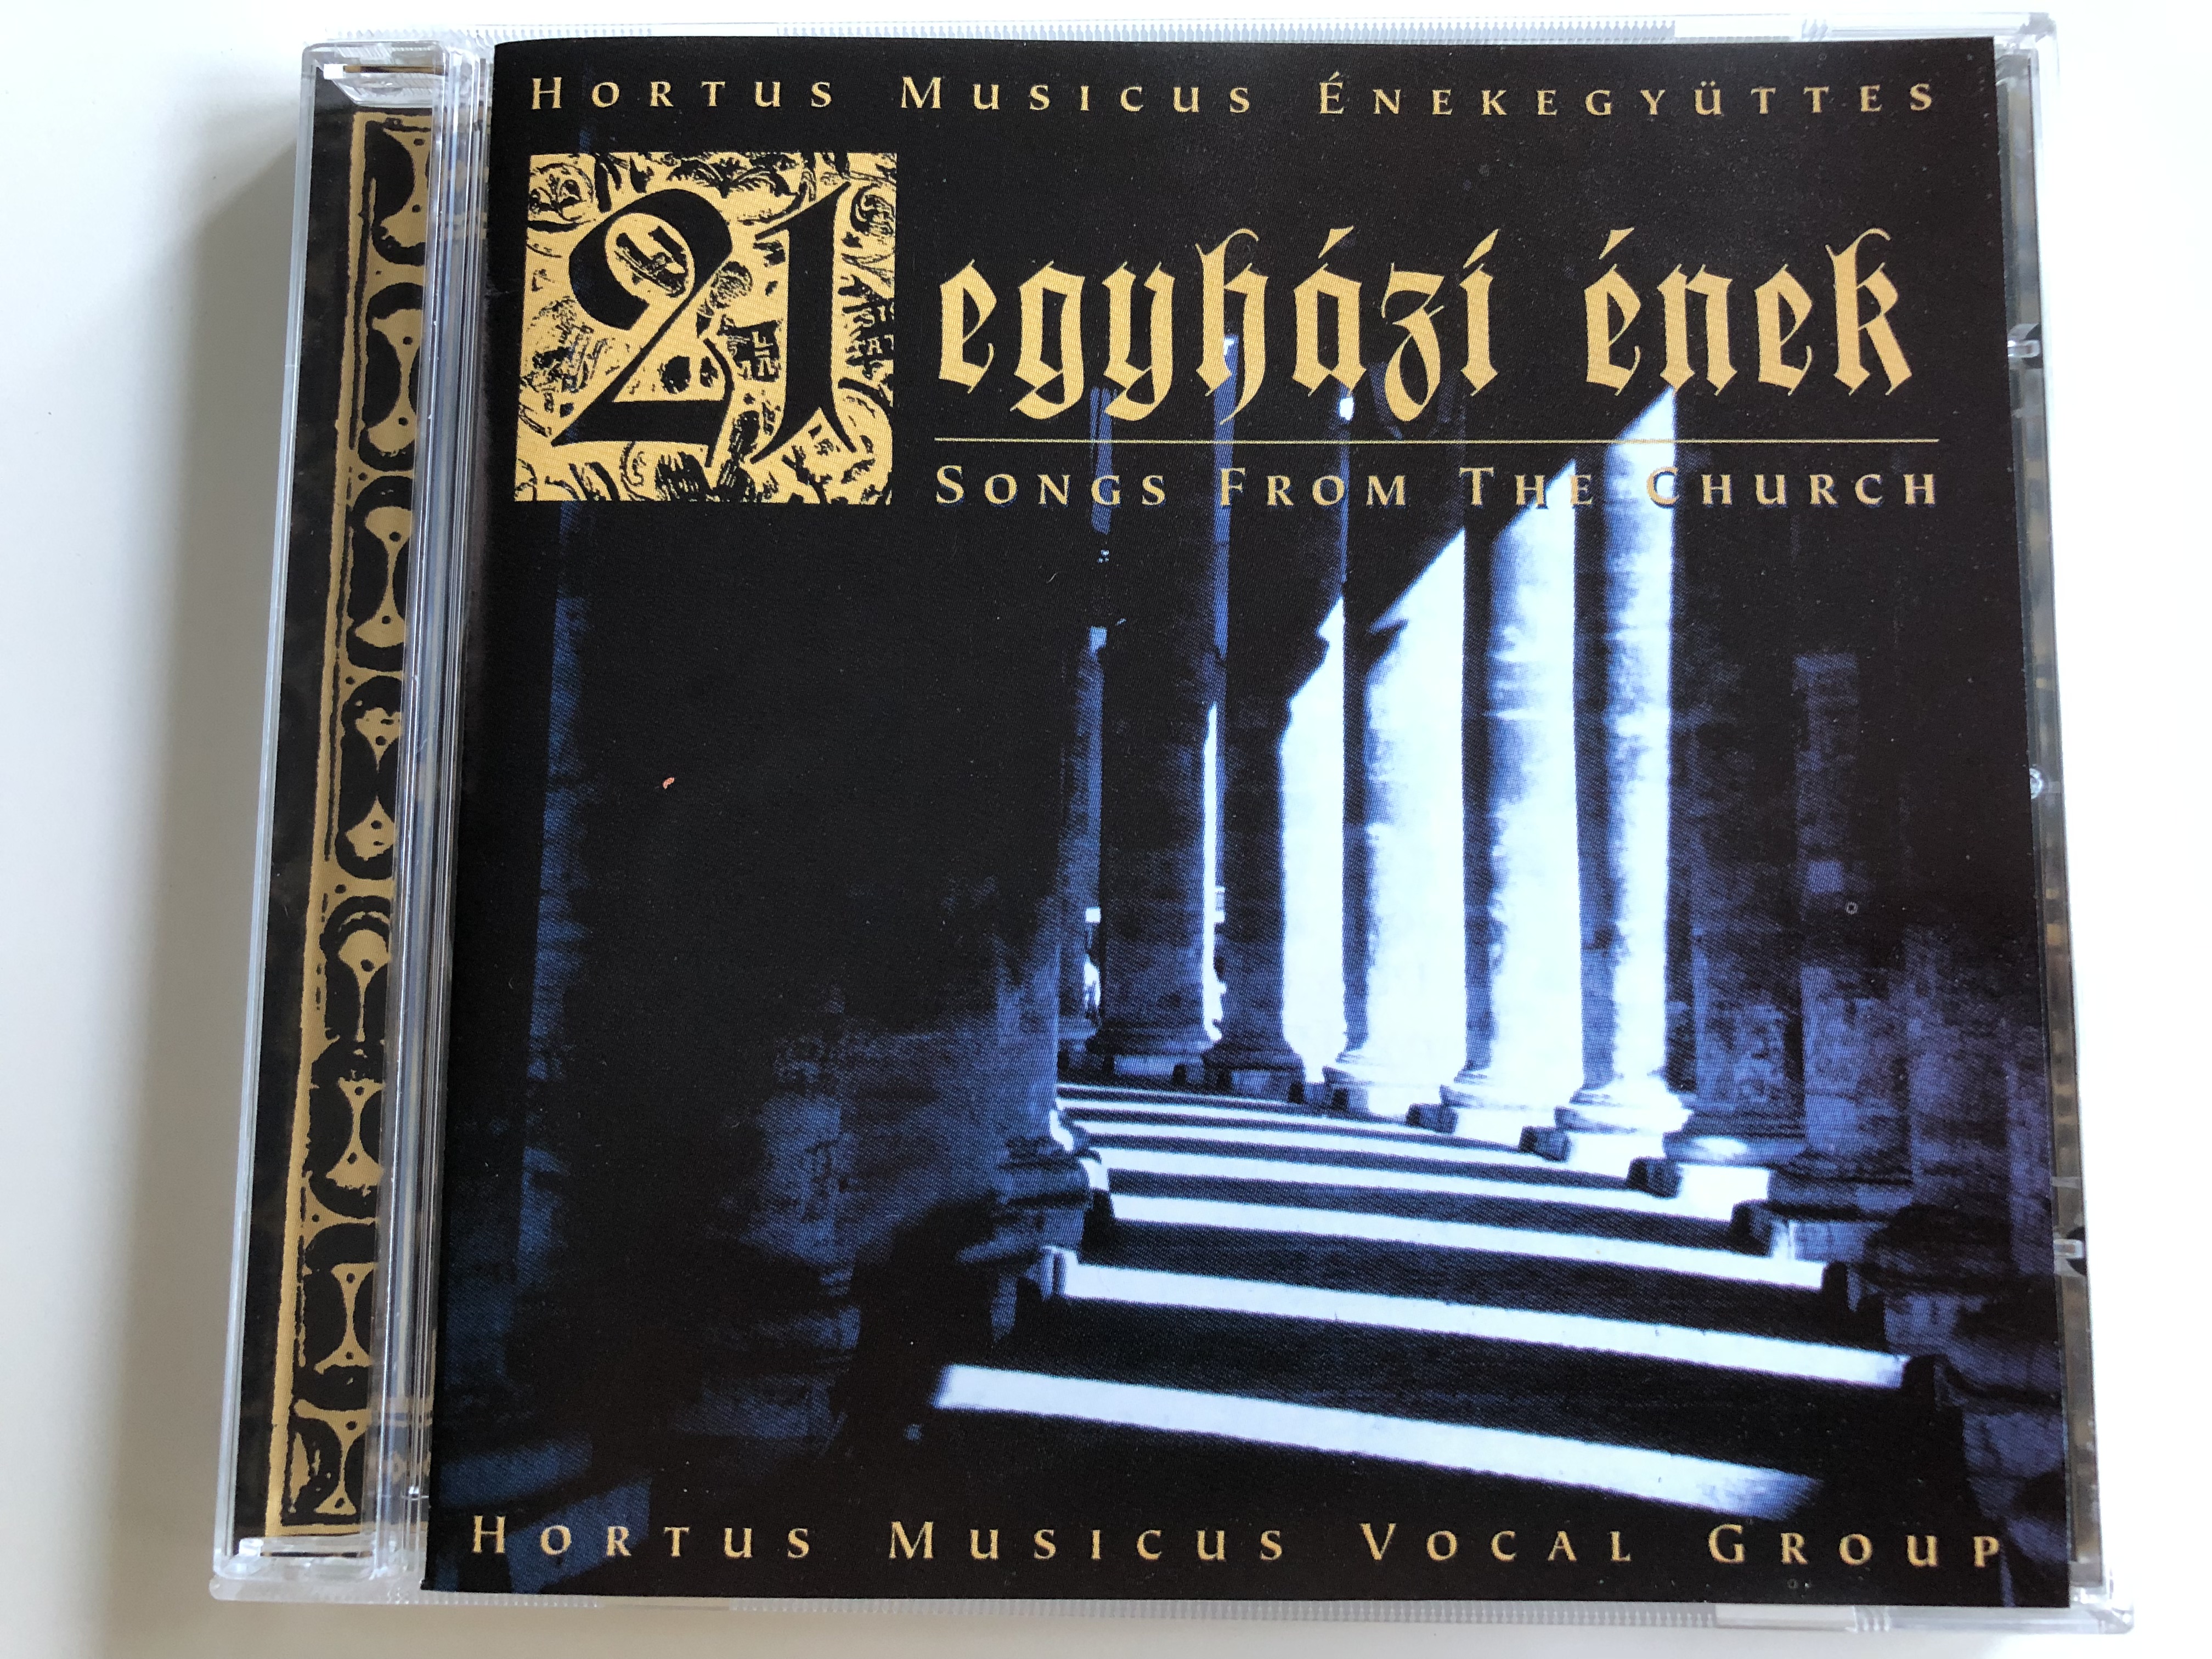 hortus-musicus-21-egyh-zi-nek-21-songs-from-tre-church-audio-cd-1998-bgcd026-1-.jpg